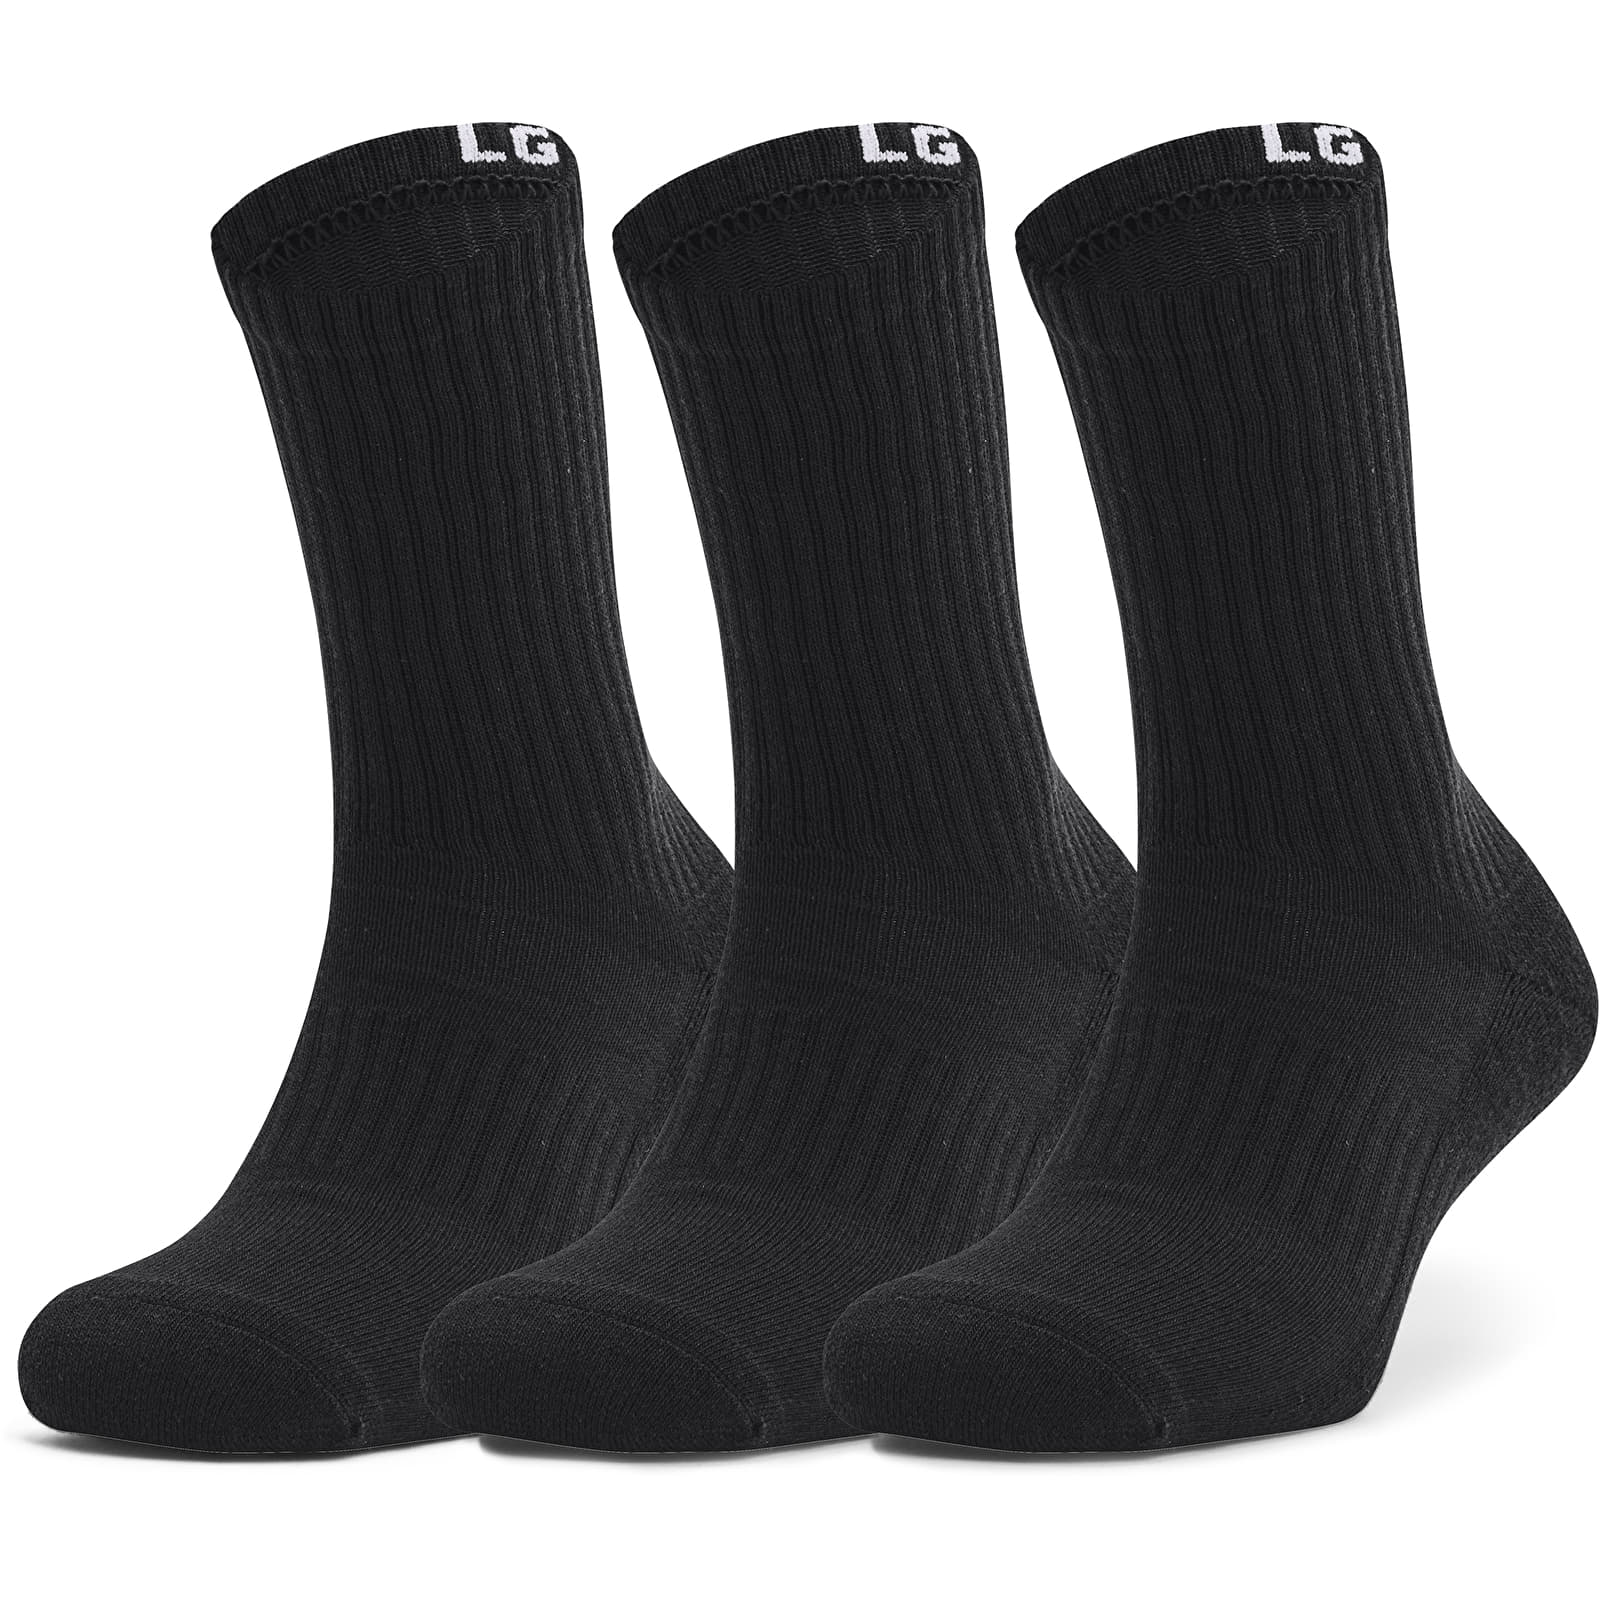 Dodatki Under Armour Core Crew 3 Pack Socks Black/ White